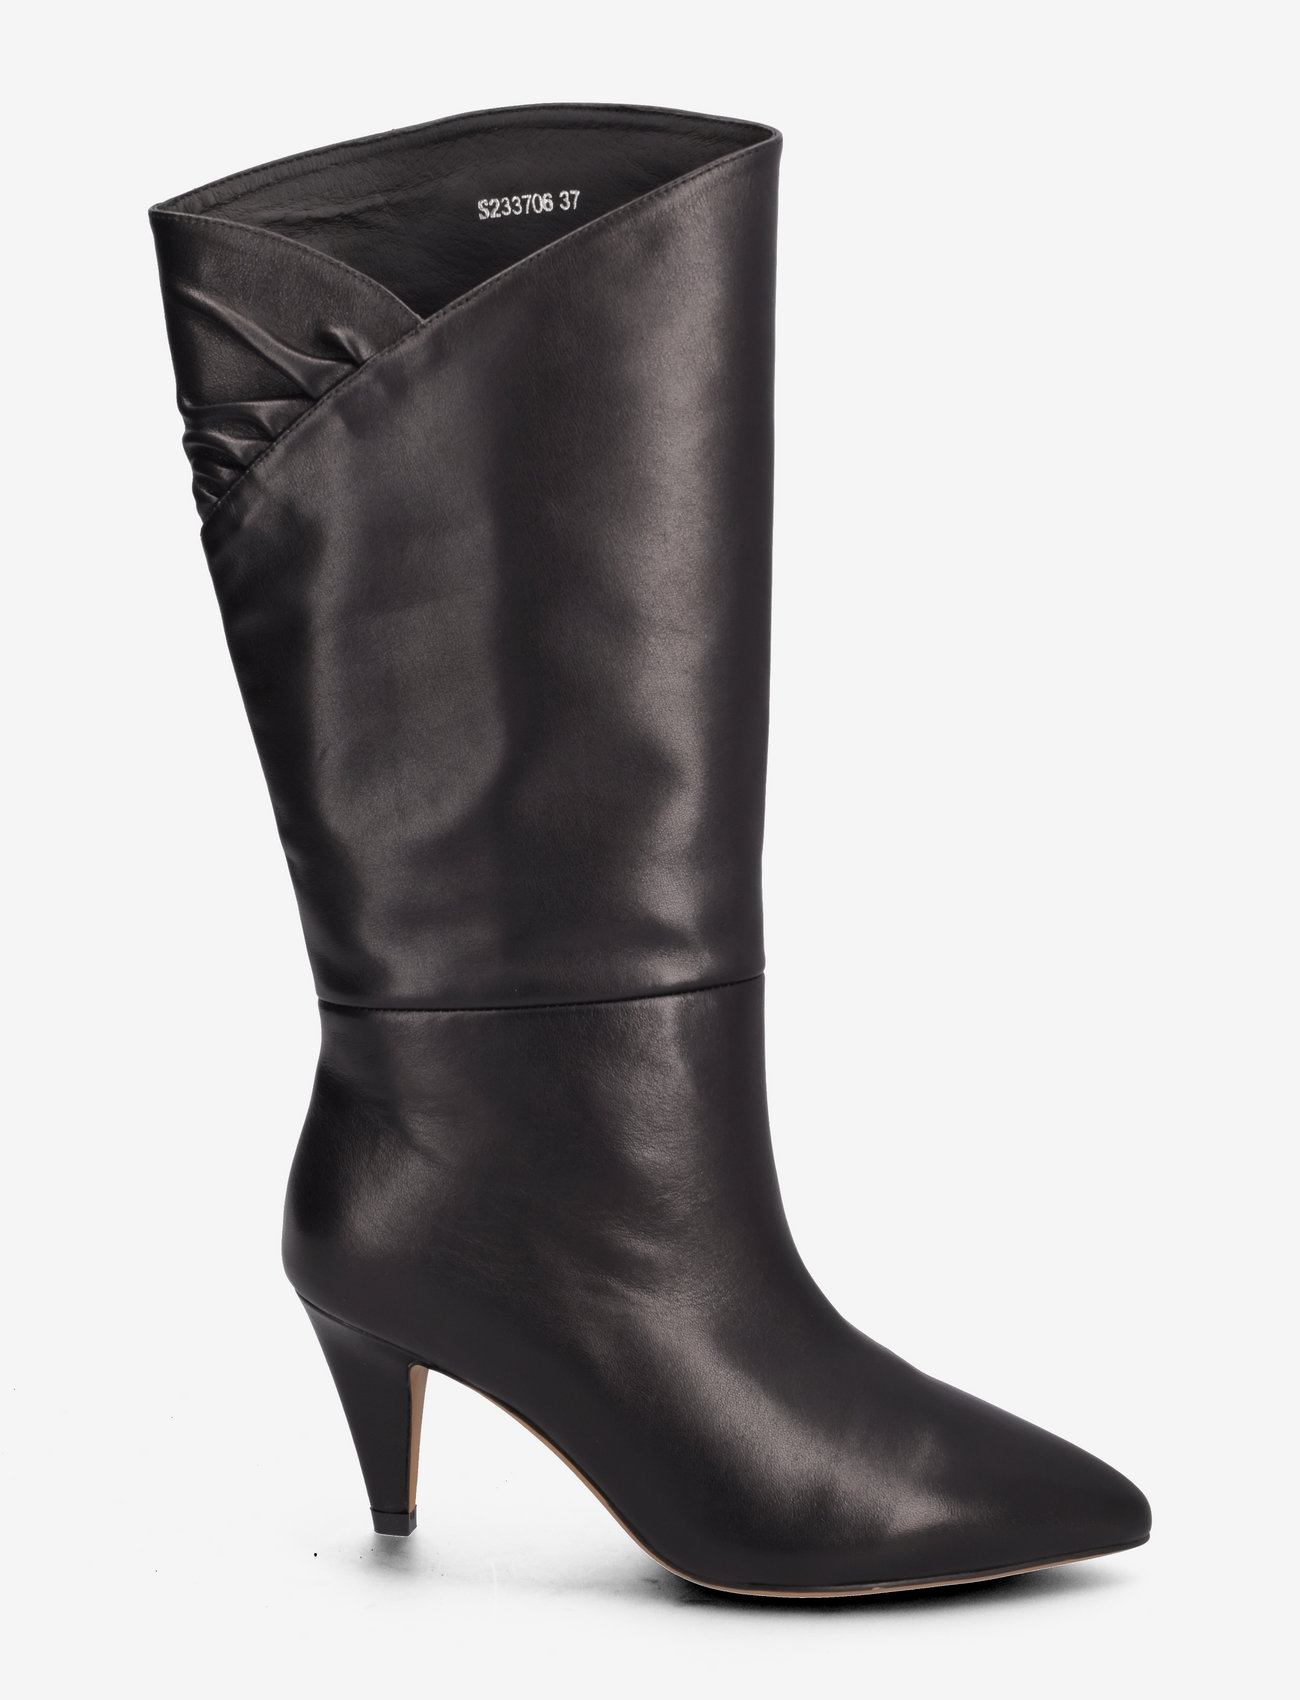 Sofie Schnoor - Boot - knee high boots - black - 1